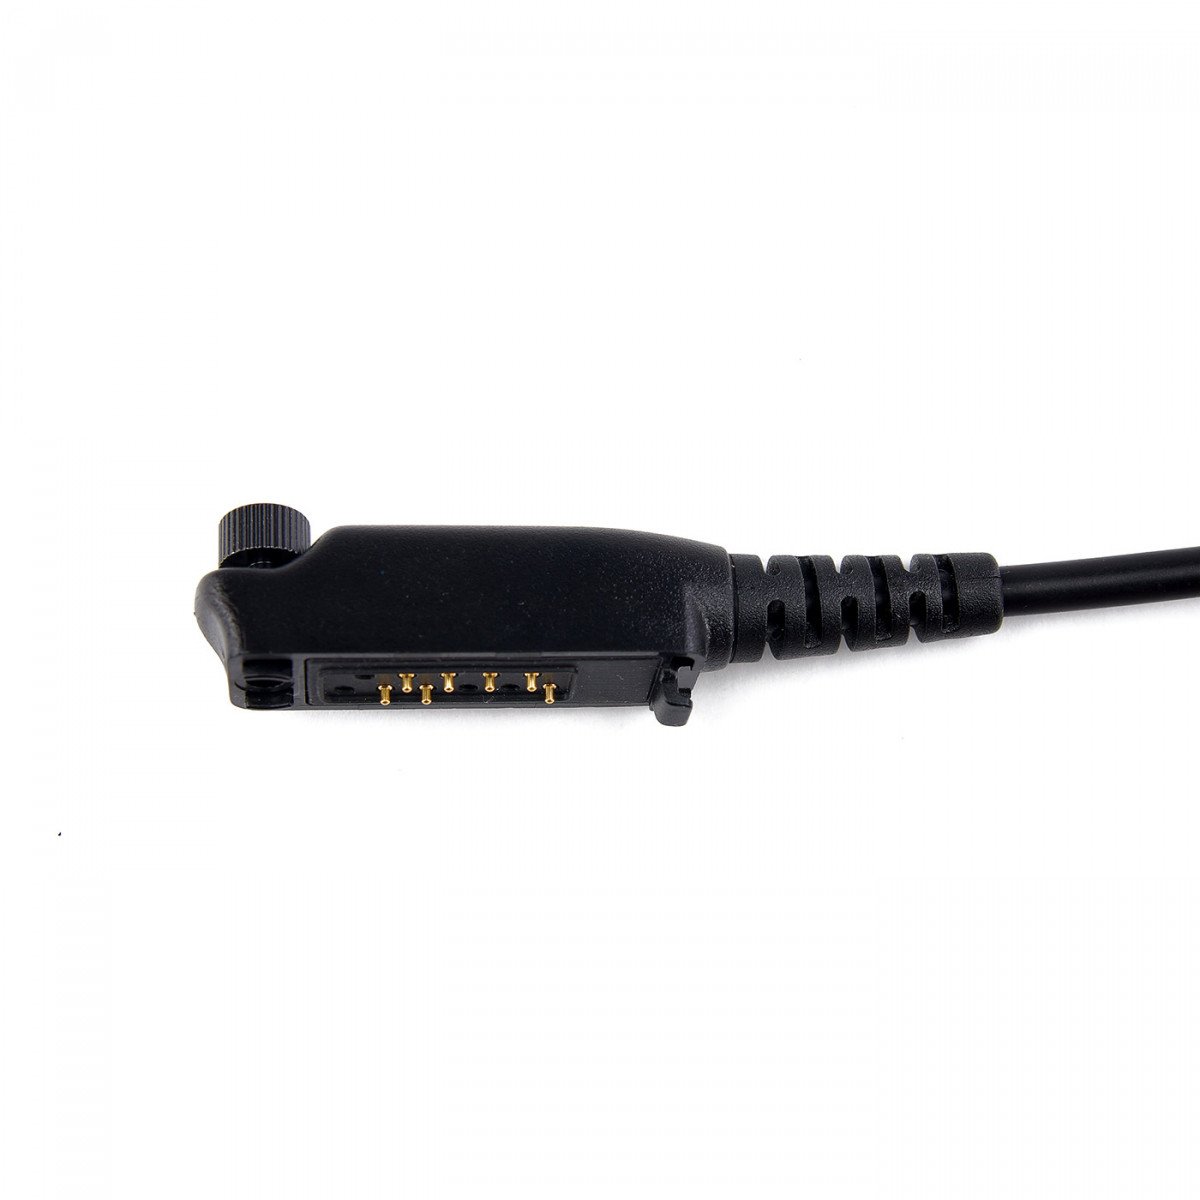 SEPURA Lautsprecher-Mikrofon mit 3 Funktionstasten, für STP8/9000, SC20, SC21, 60cm Kabel 300-00733